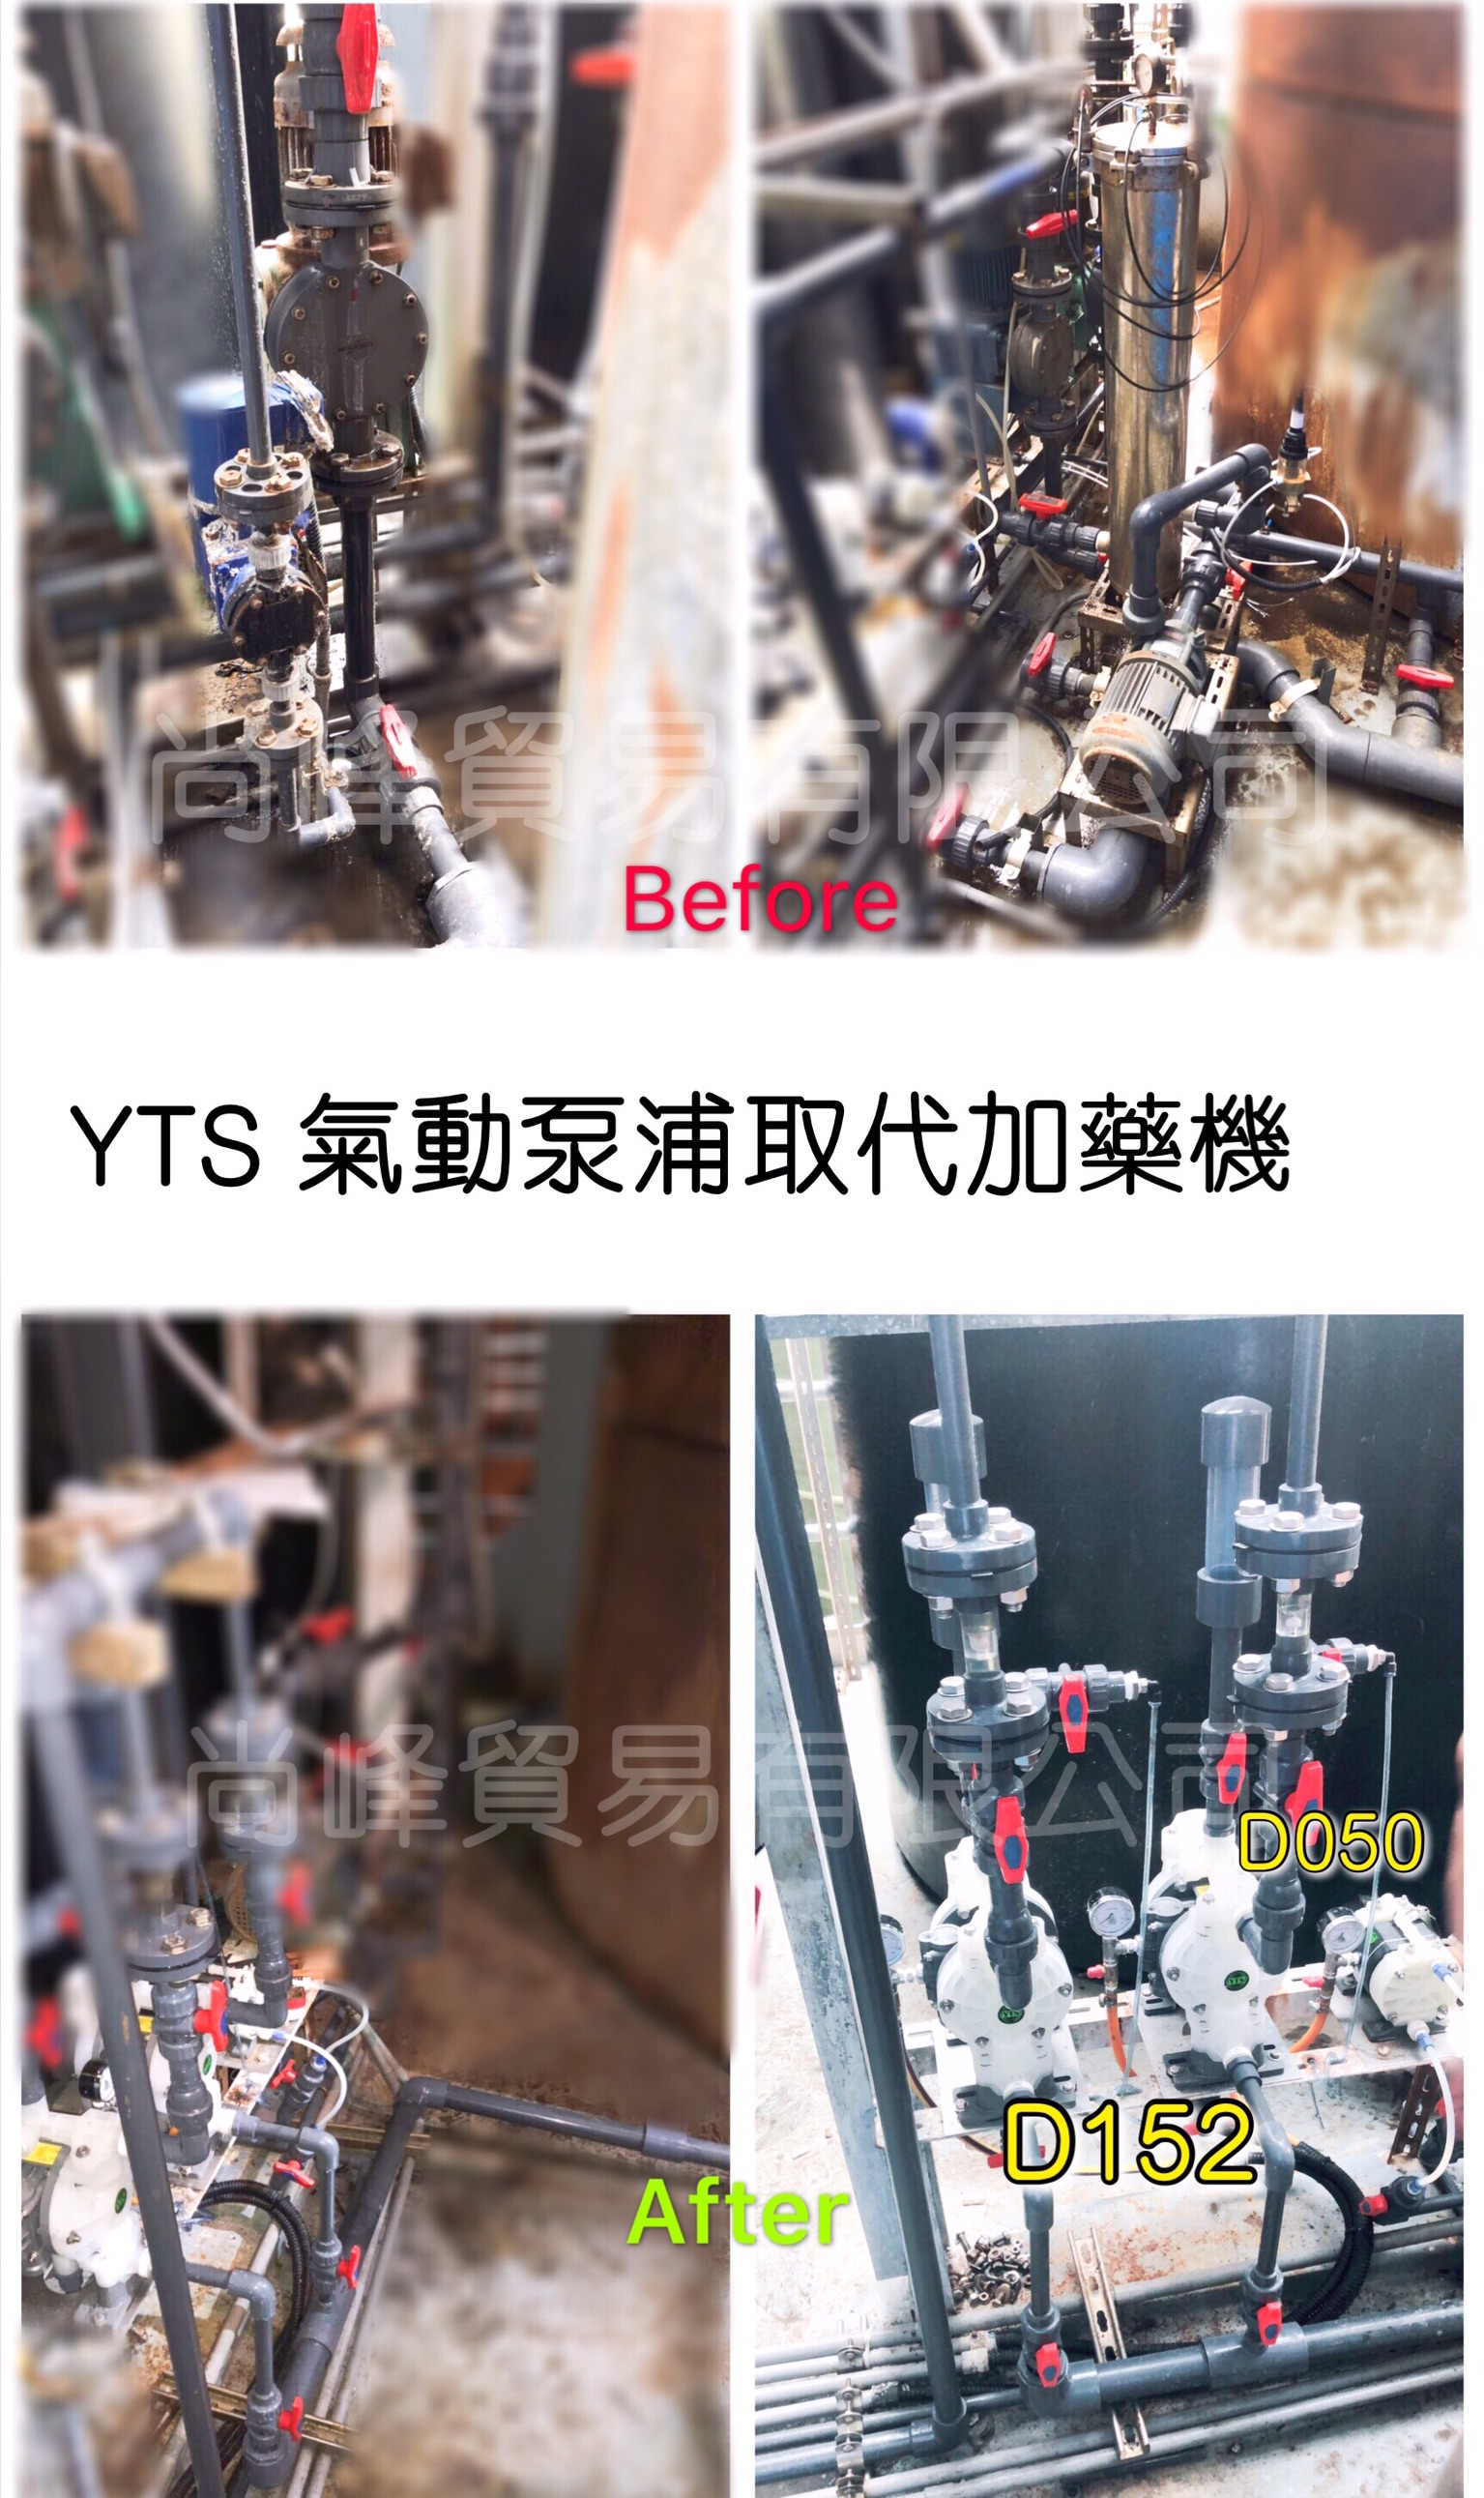 加藥機, 氣動隔膜泵浦, 氣動泵浦, YTSPUMP, 隔膜泵, 定量泵, 對比